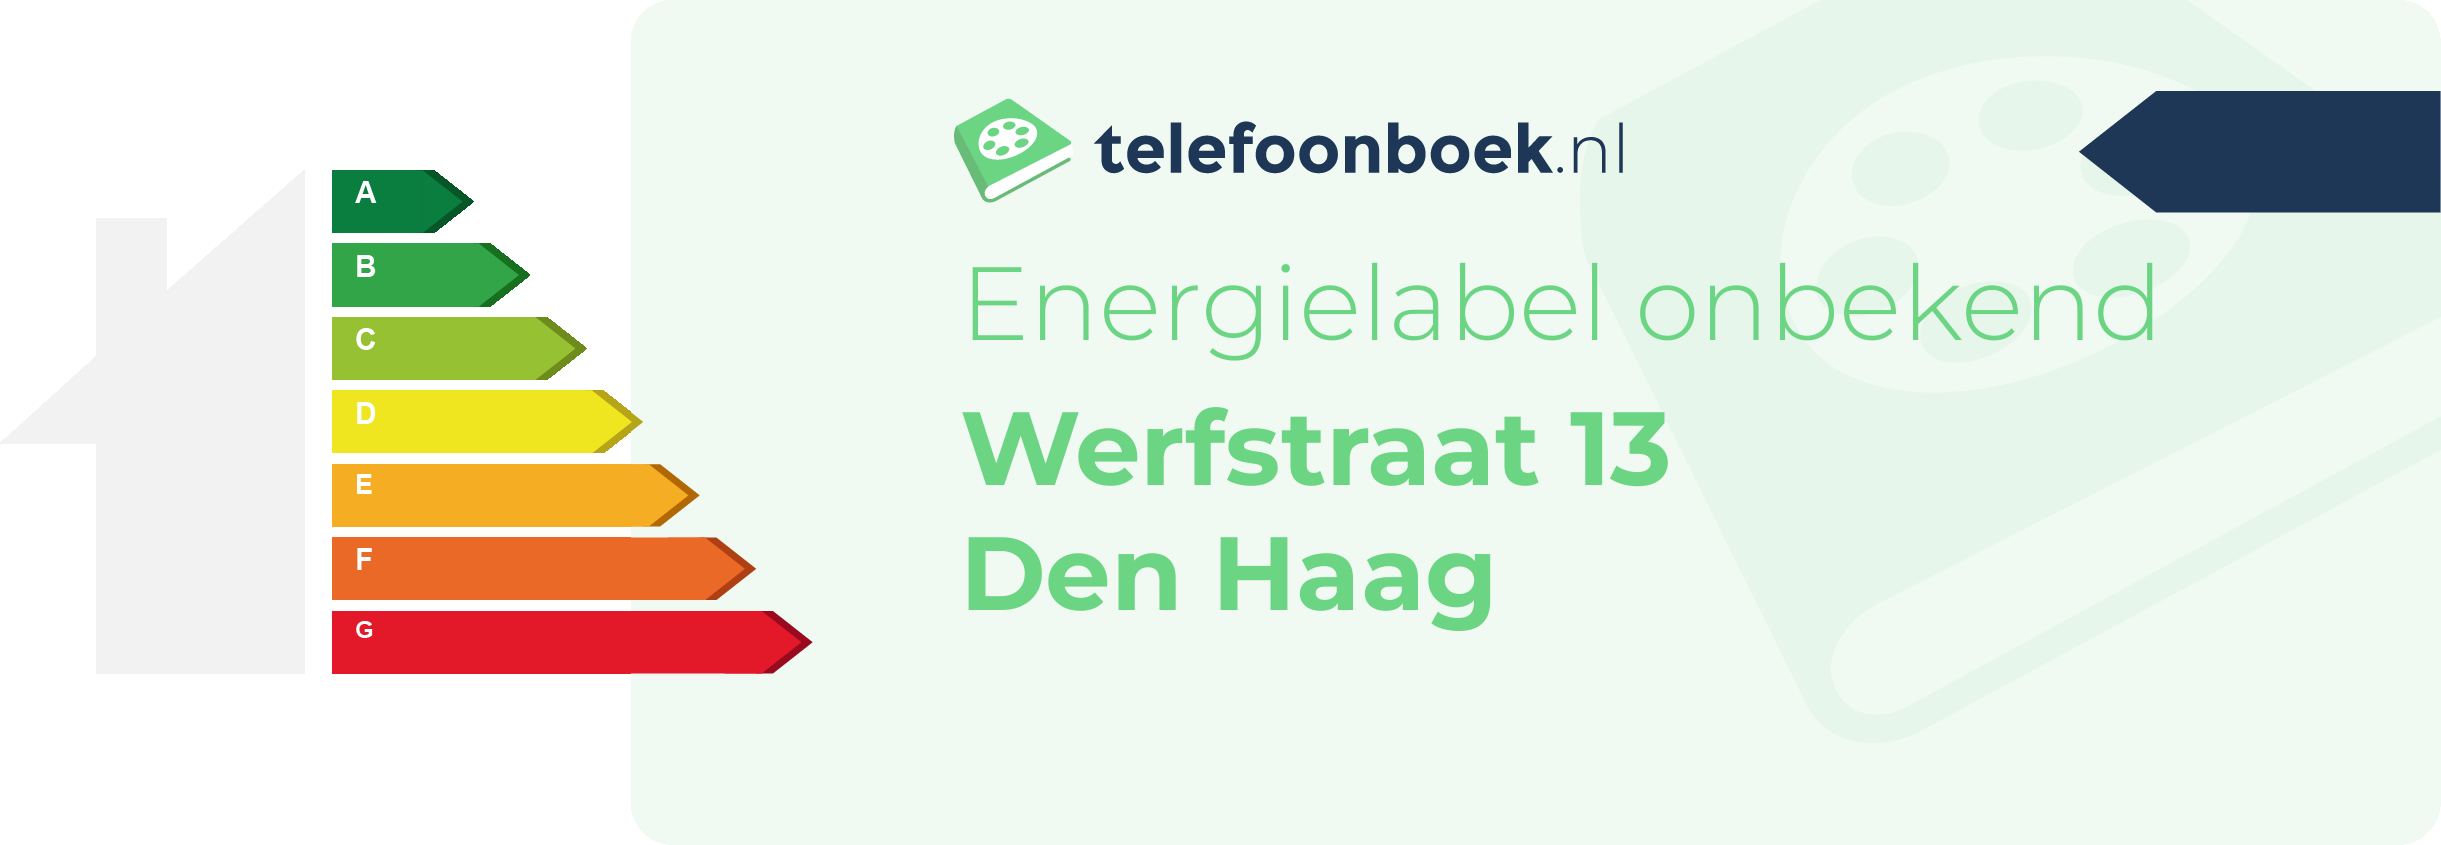 Energielabel Werfstraat 13 Den Haag